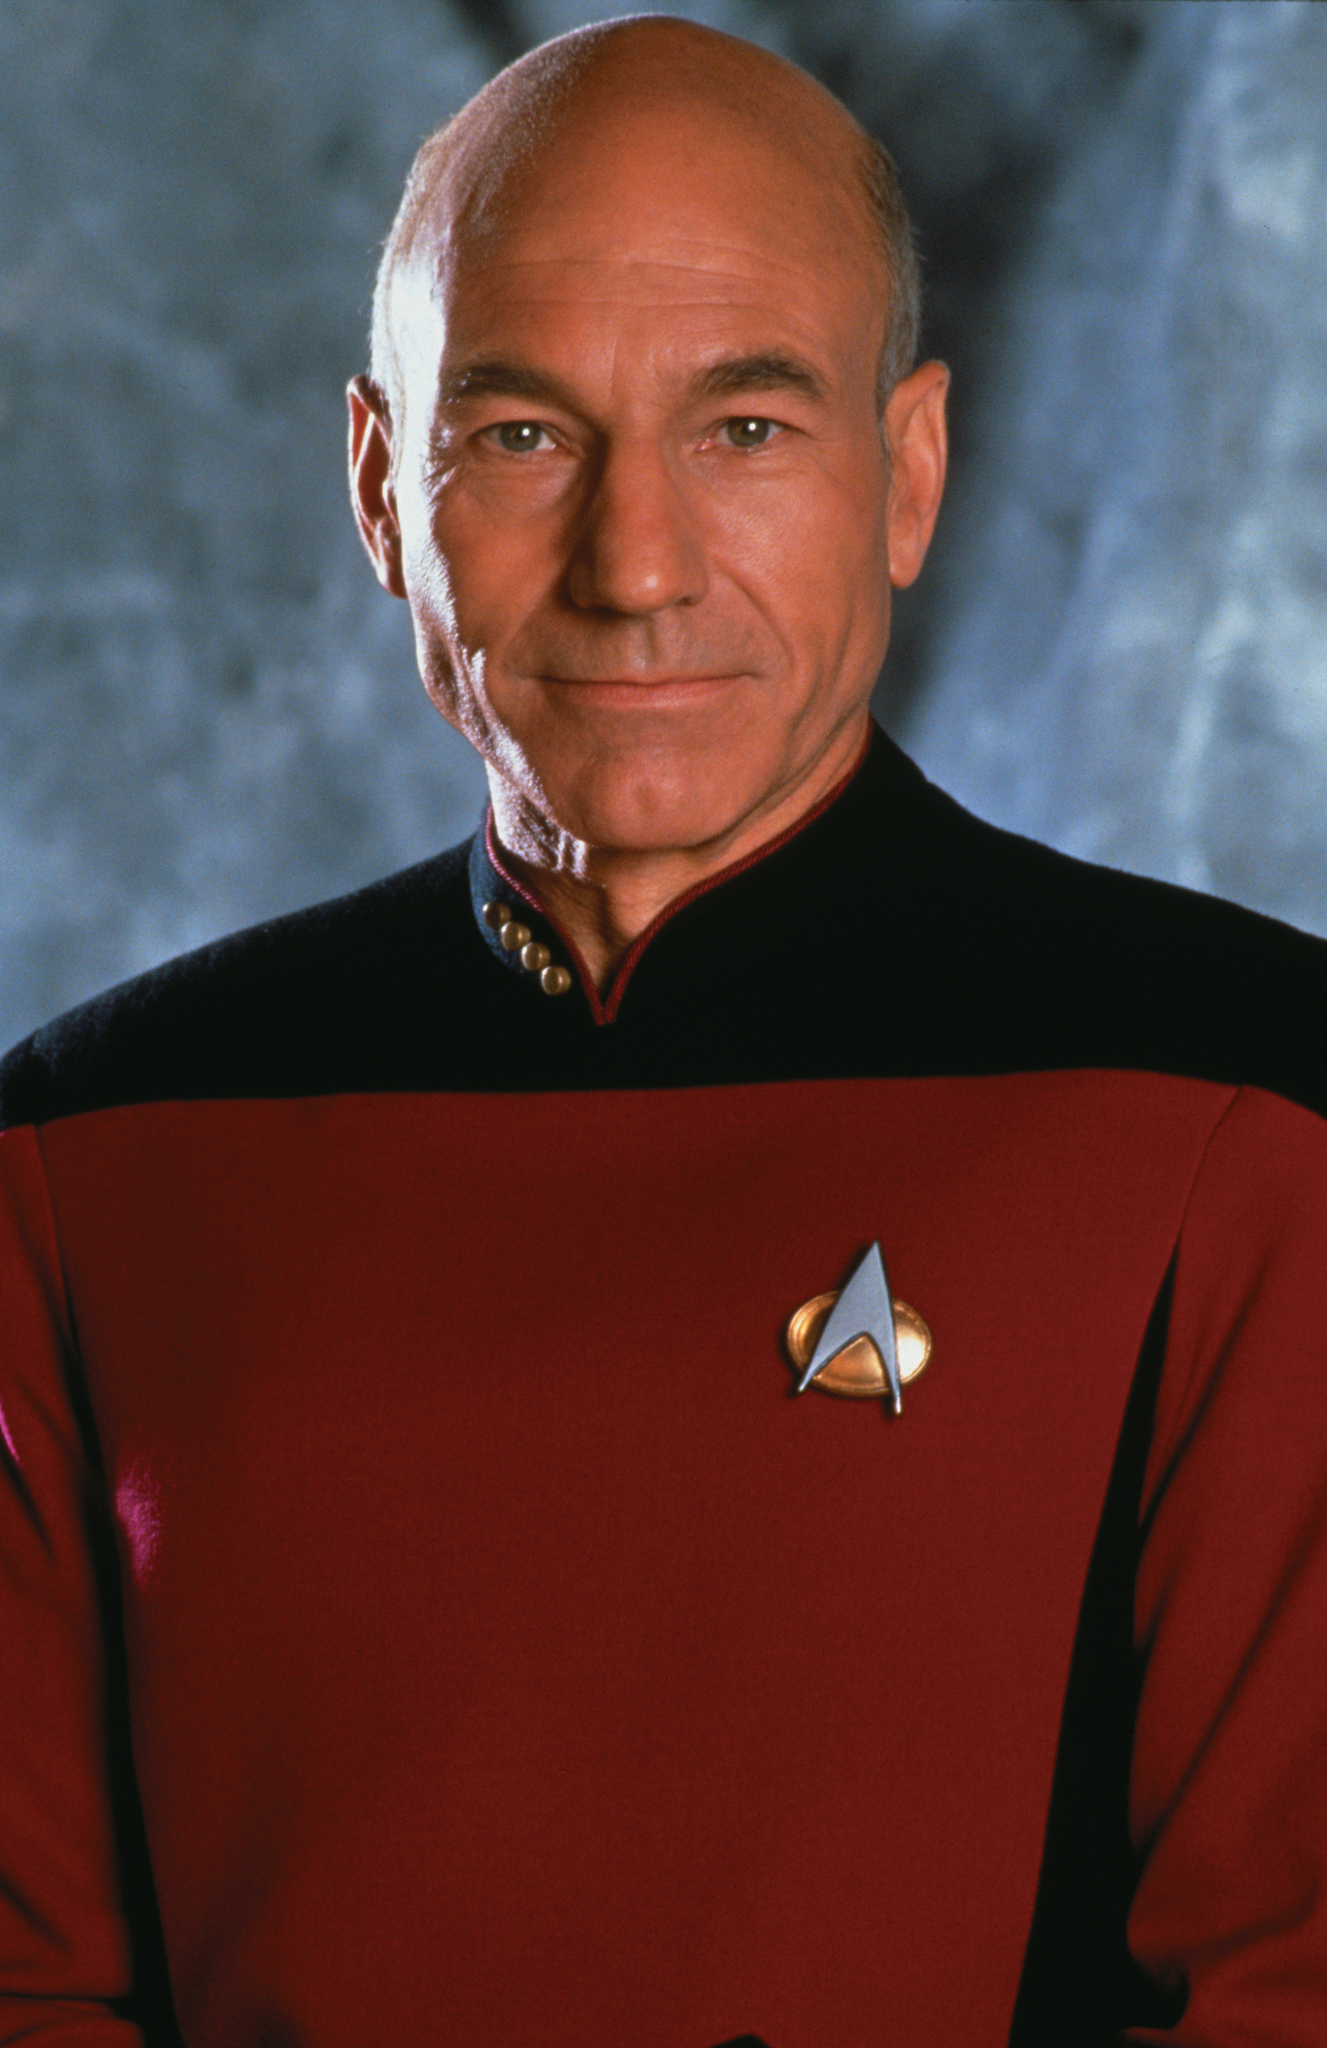 Patrick Stewart in Star Trek: The Next Generation (1987)